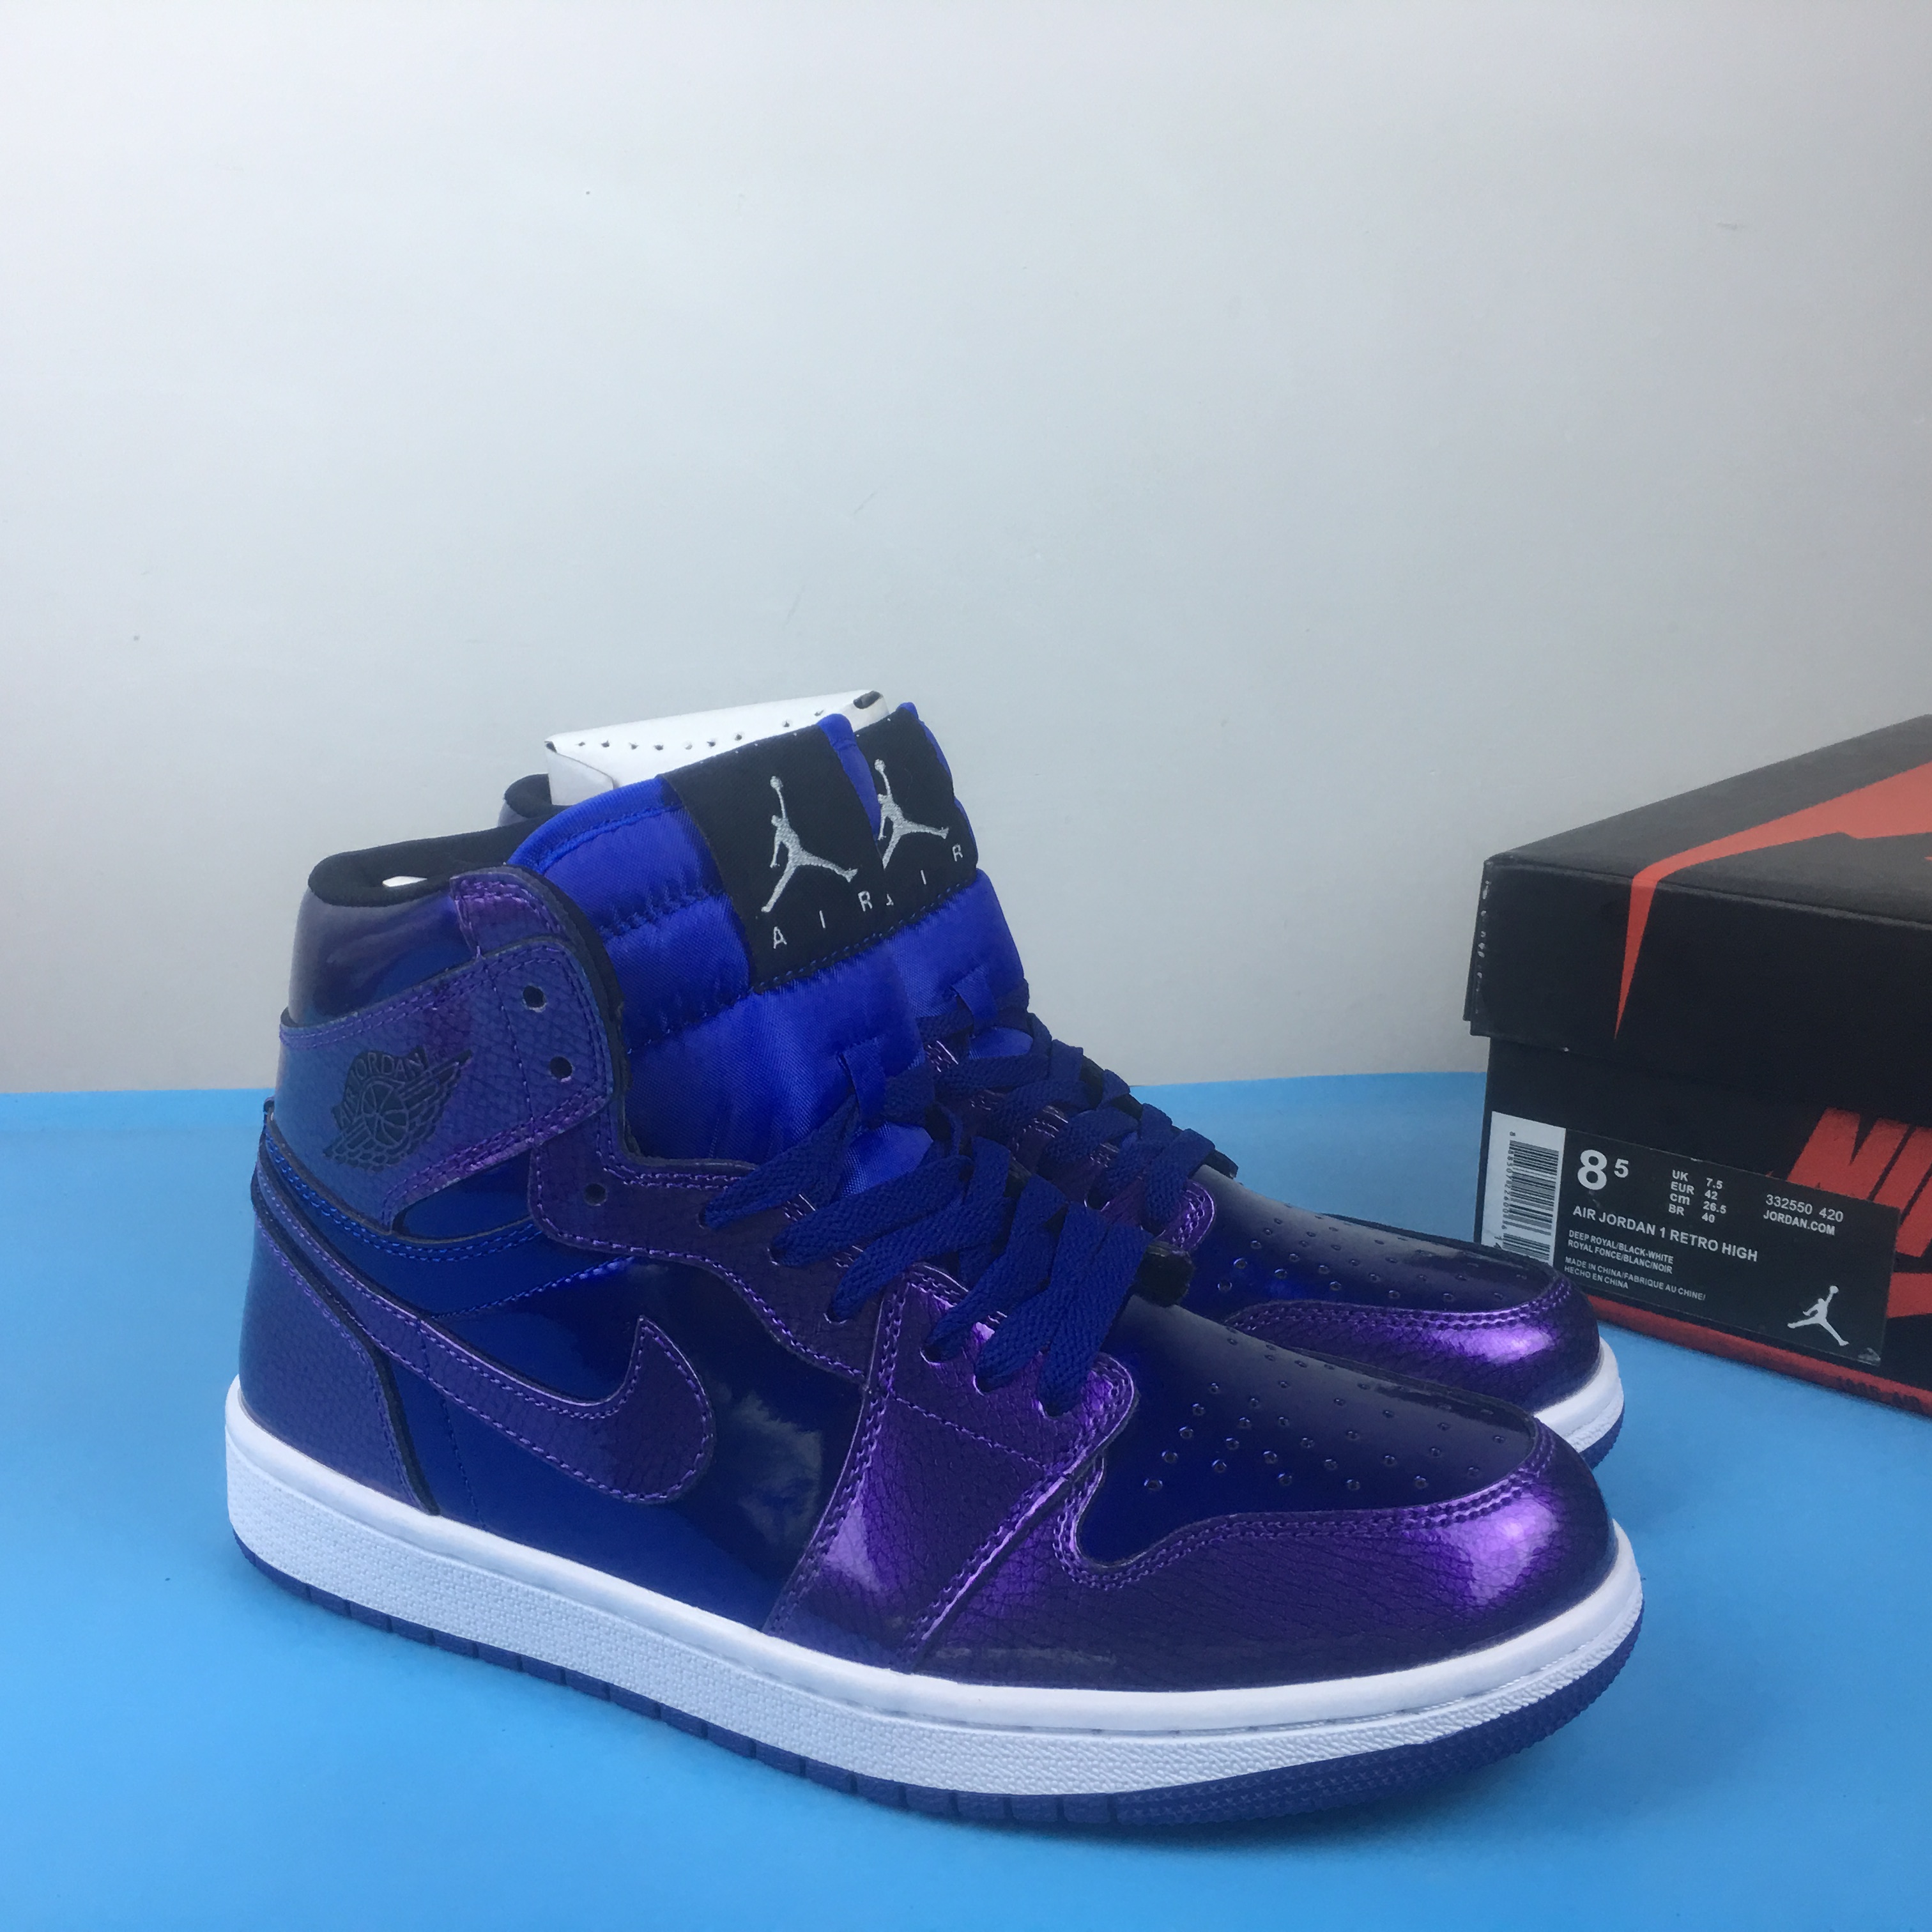 Air Jordan 1 Retro High Shine Blue Shoes